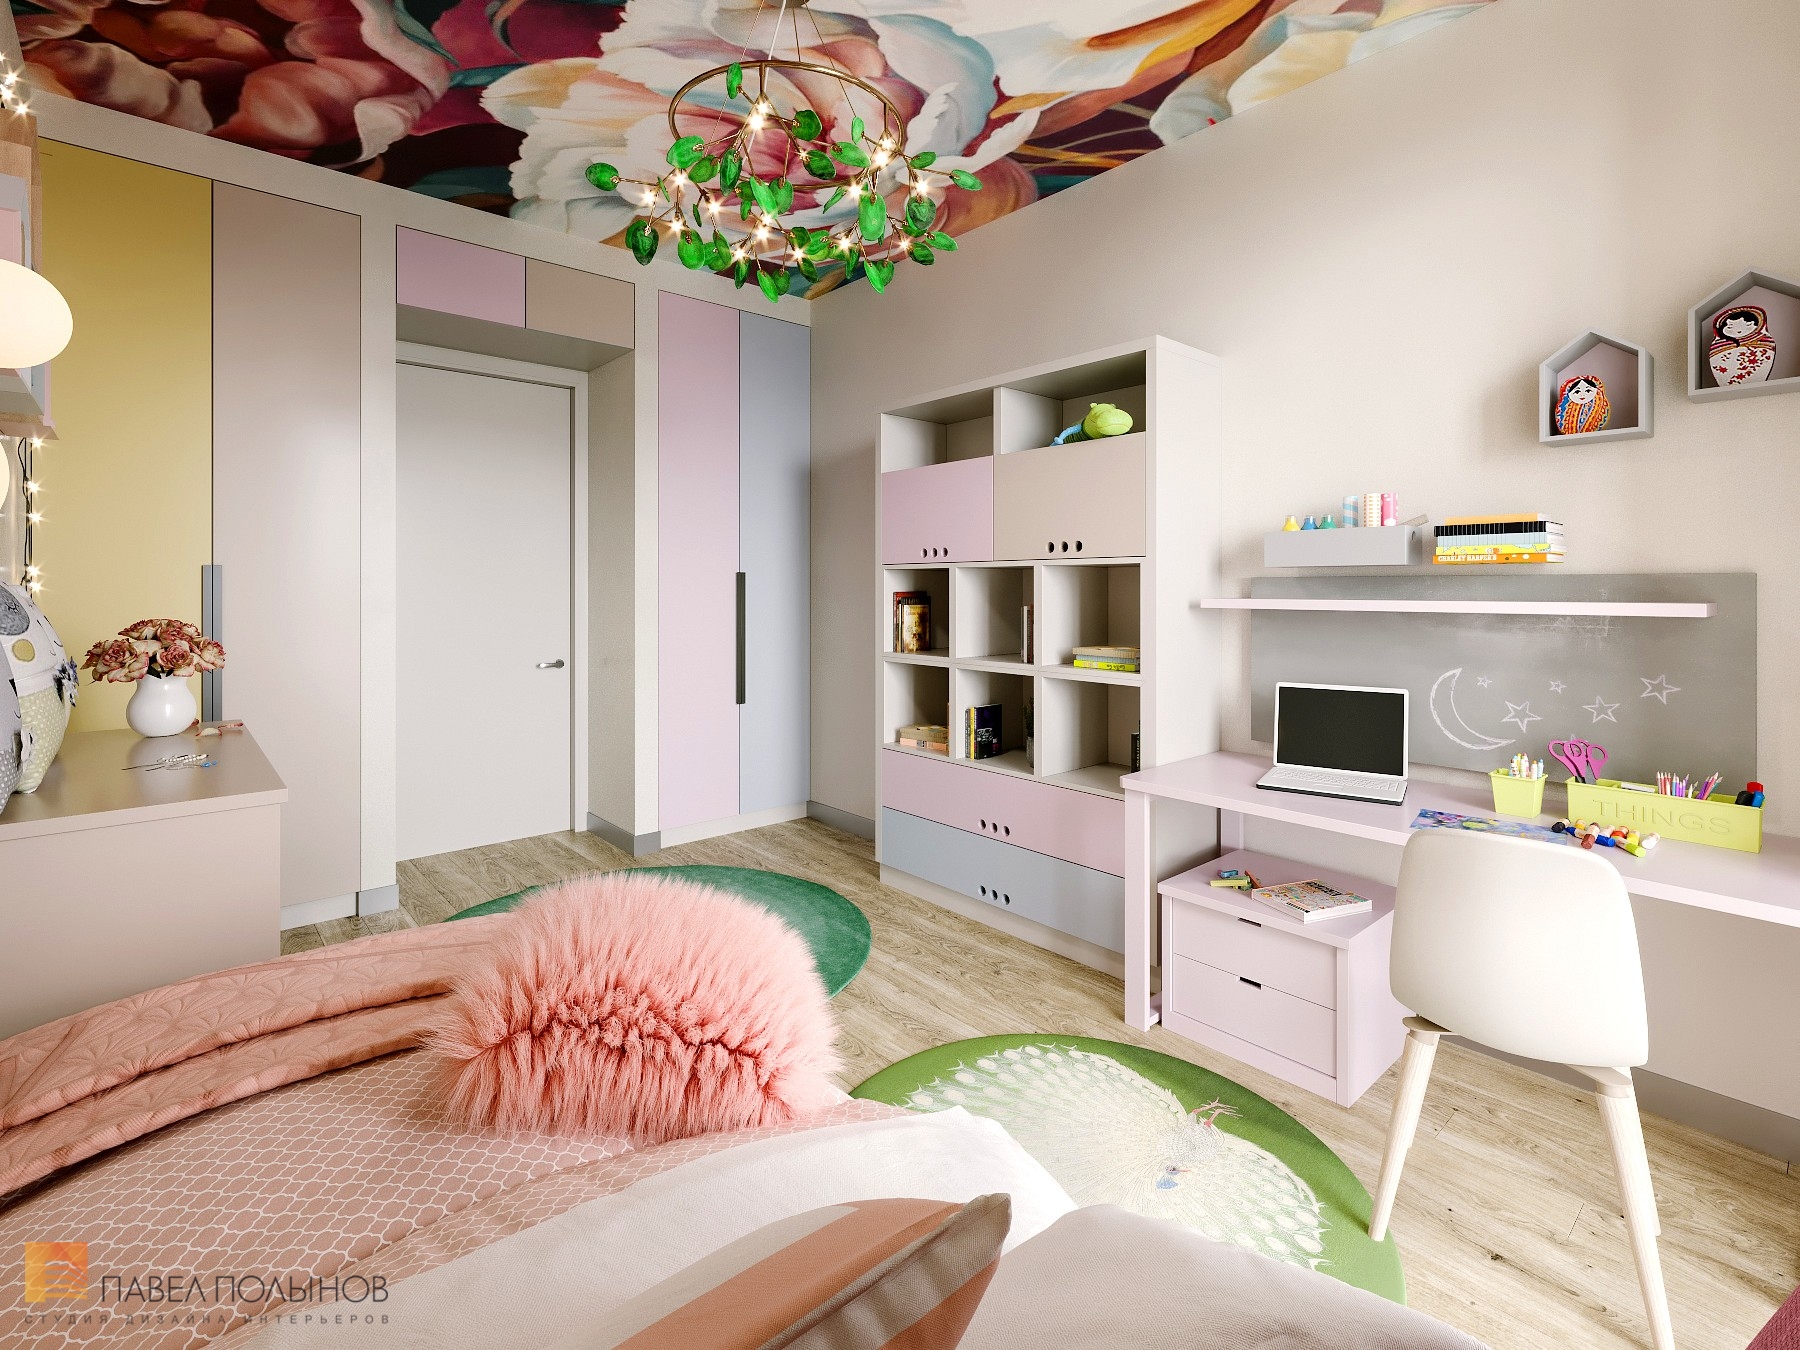 Фото дизайн детской комнаты для девочки из проекта «Интерьер квартиры в современном стиле, ЖК «Дом на Зелейной», 170 кв.м.»